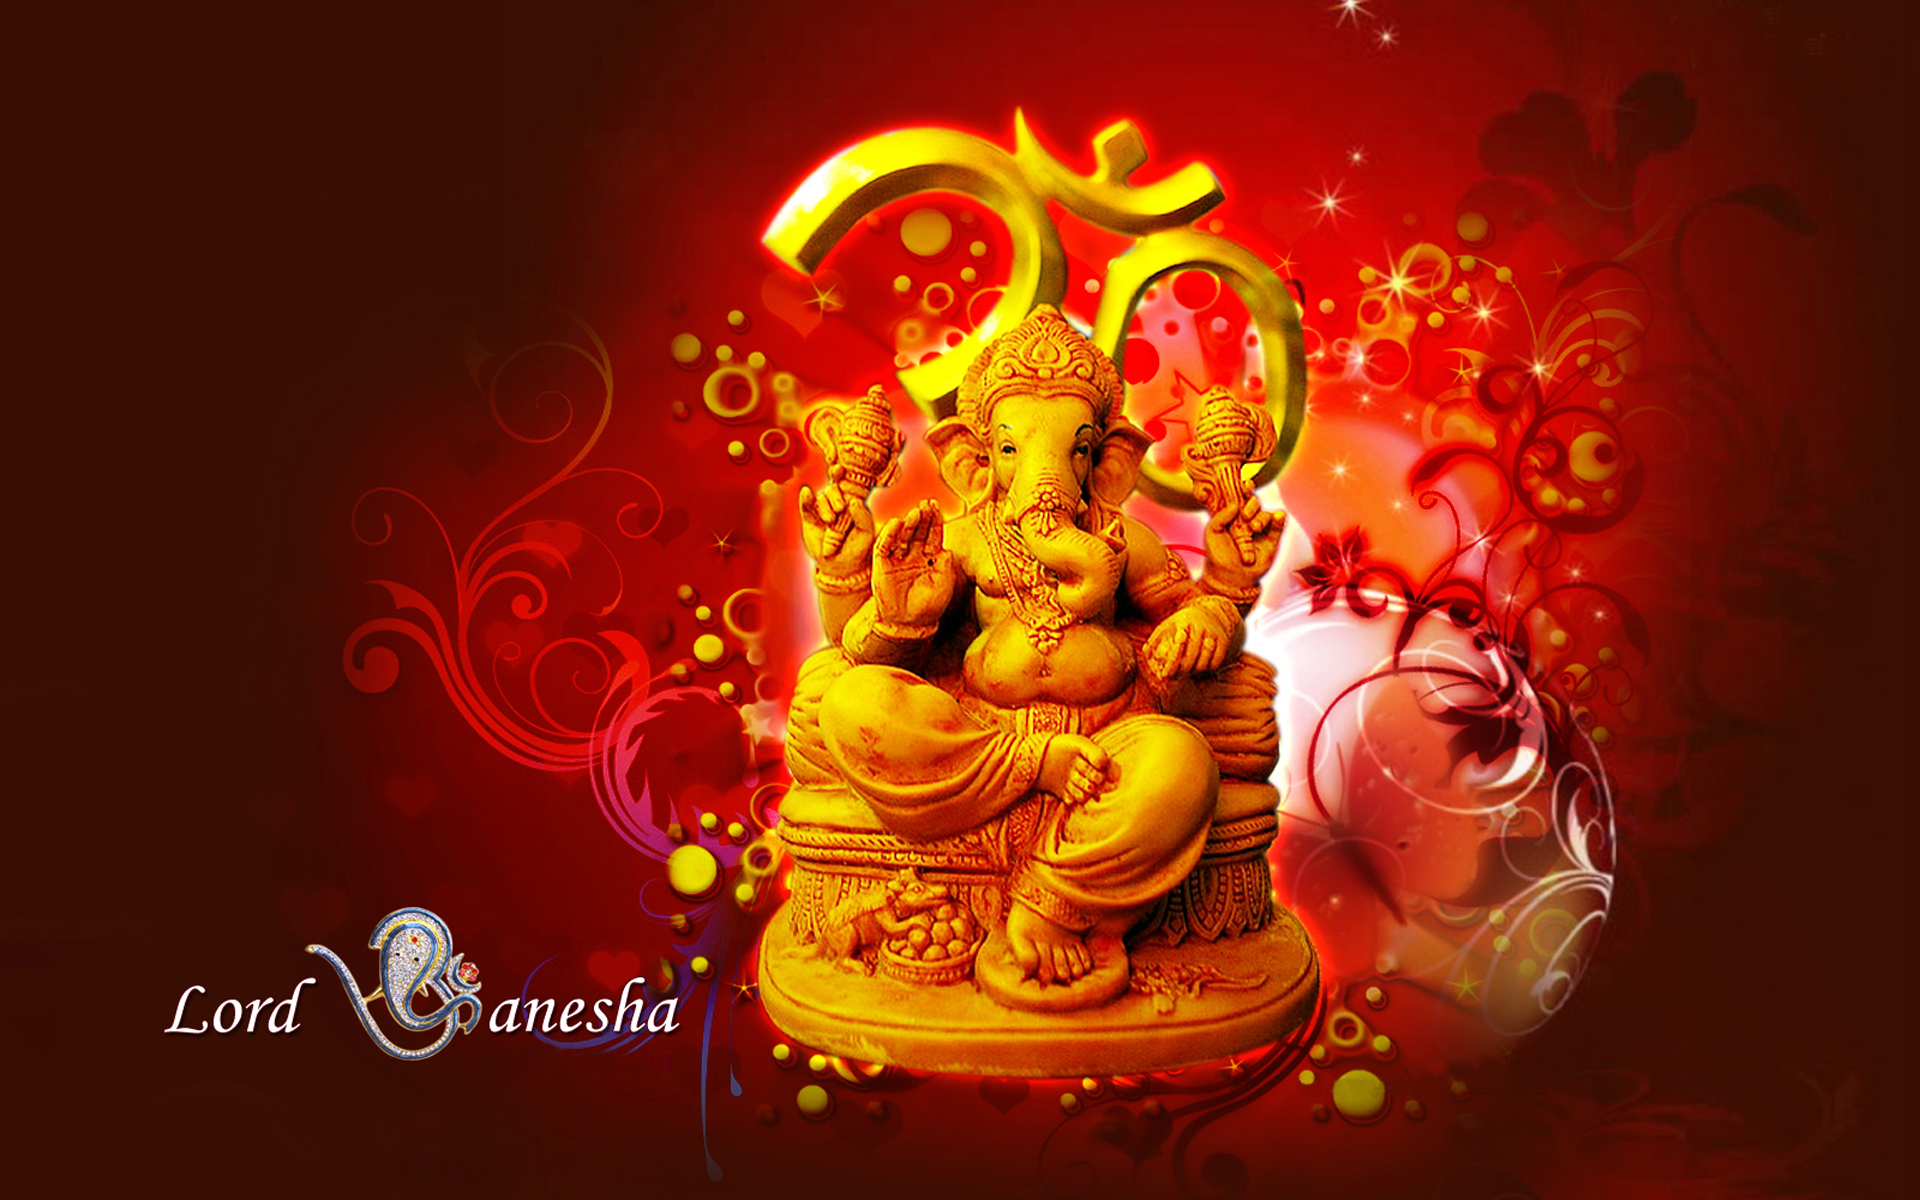 Lord Ganesha Hindu Hd Wallpaper Red And Yellow Color ...